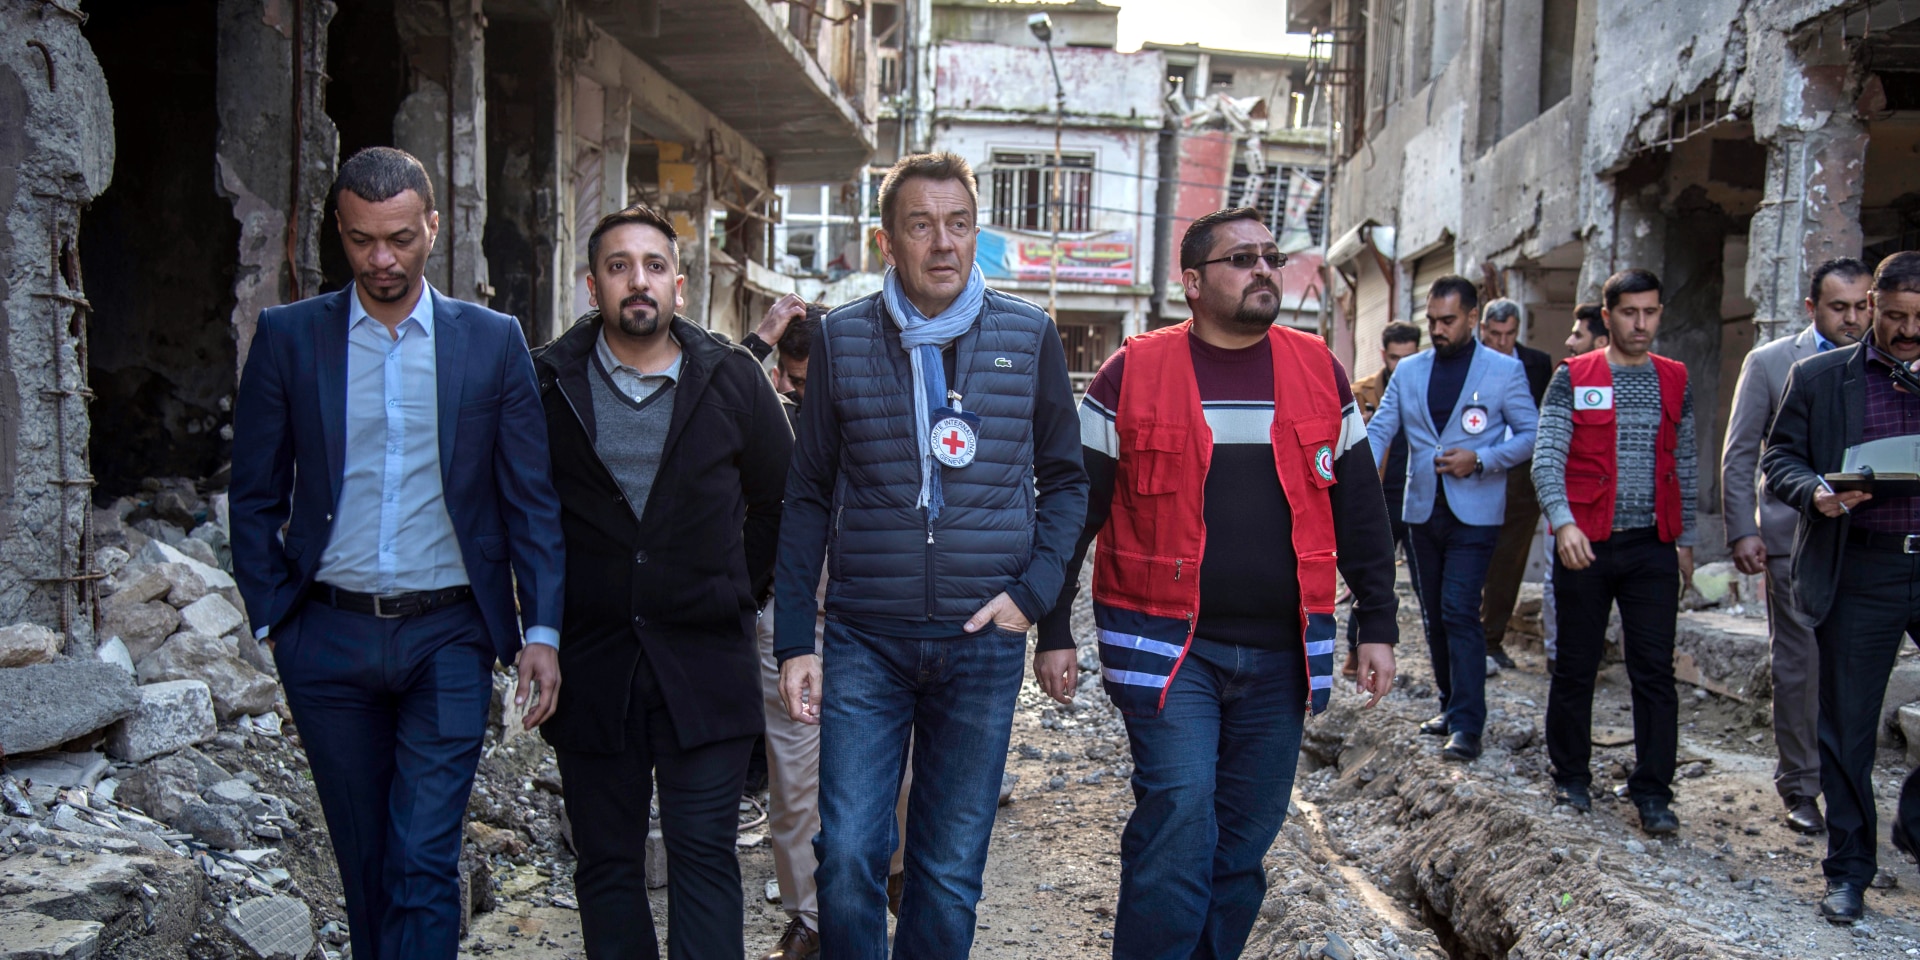 Peter Maurer accompagnato da personale del CICR e della Mezzaluna Rossa in un quartiere segnato dalla distruzione.